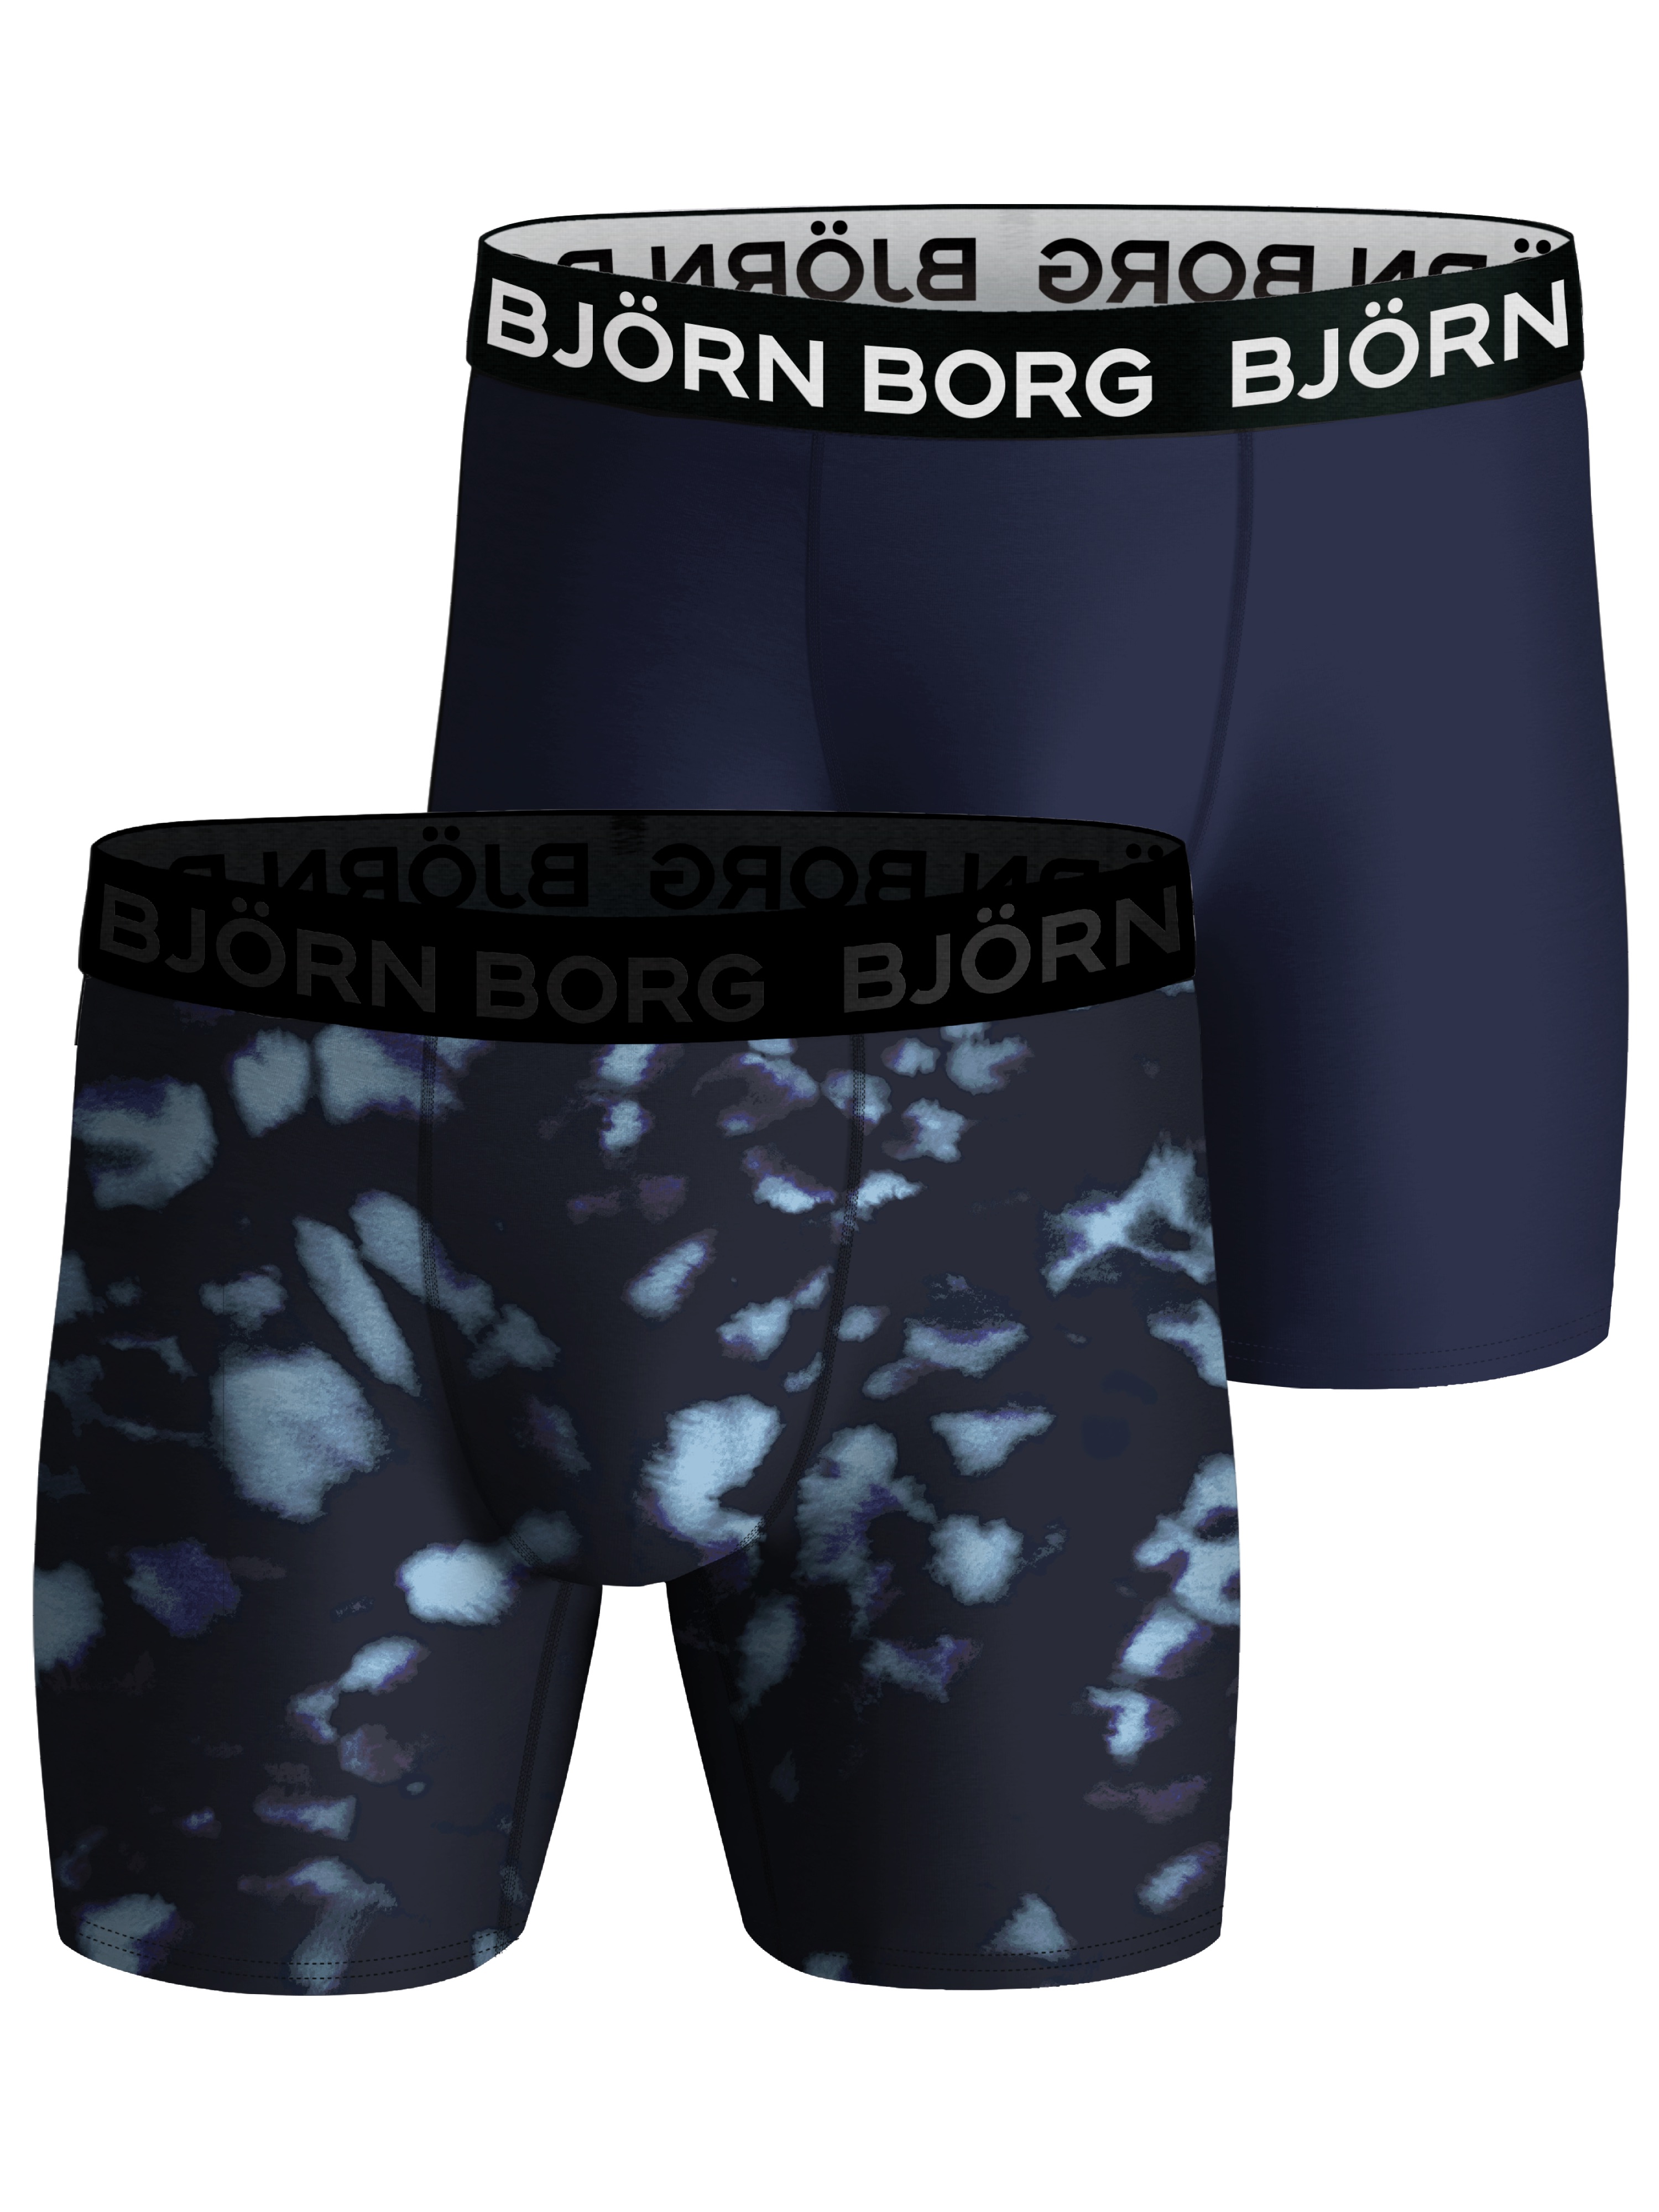 Björn Borg Björn Borg Performance Boxer 2p Multipack 3 S, Multipack 3